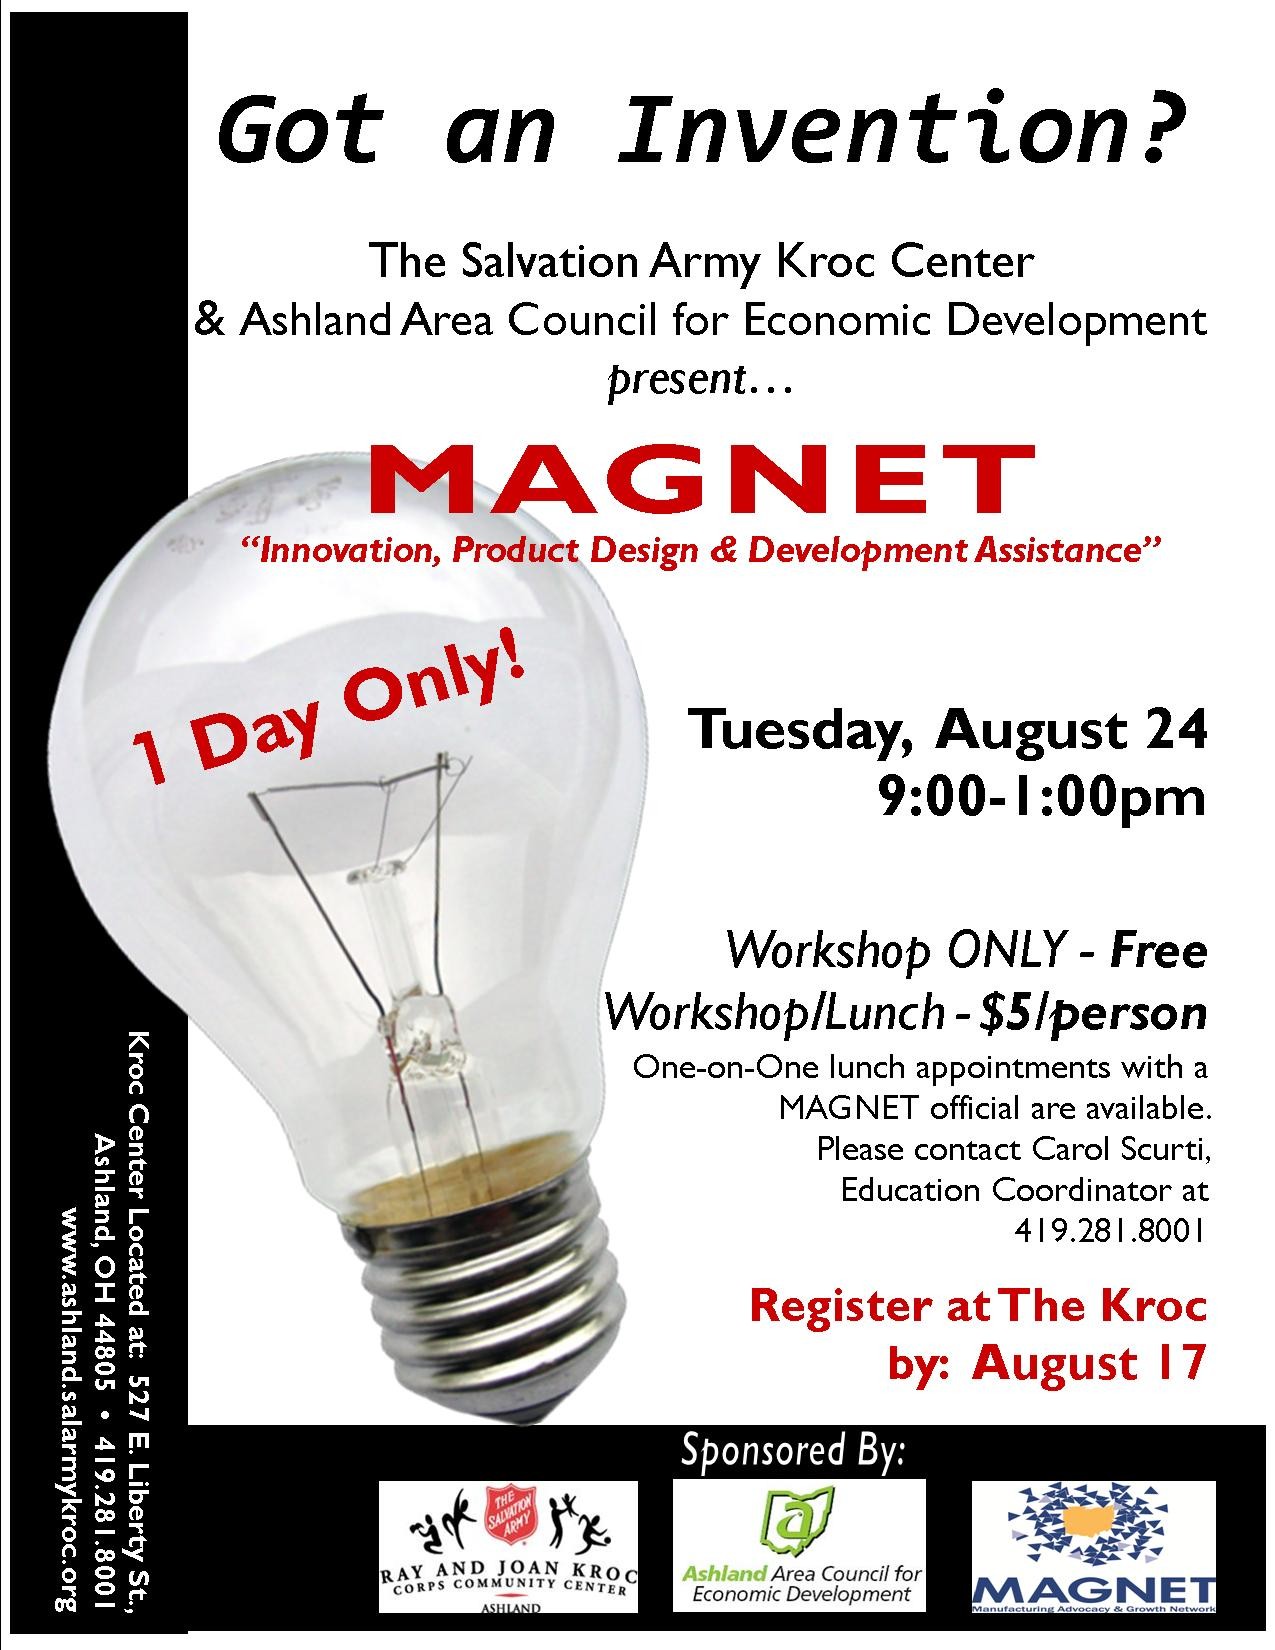 Magnet Innovation Product Design and Development Assistance Workshop